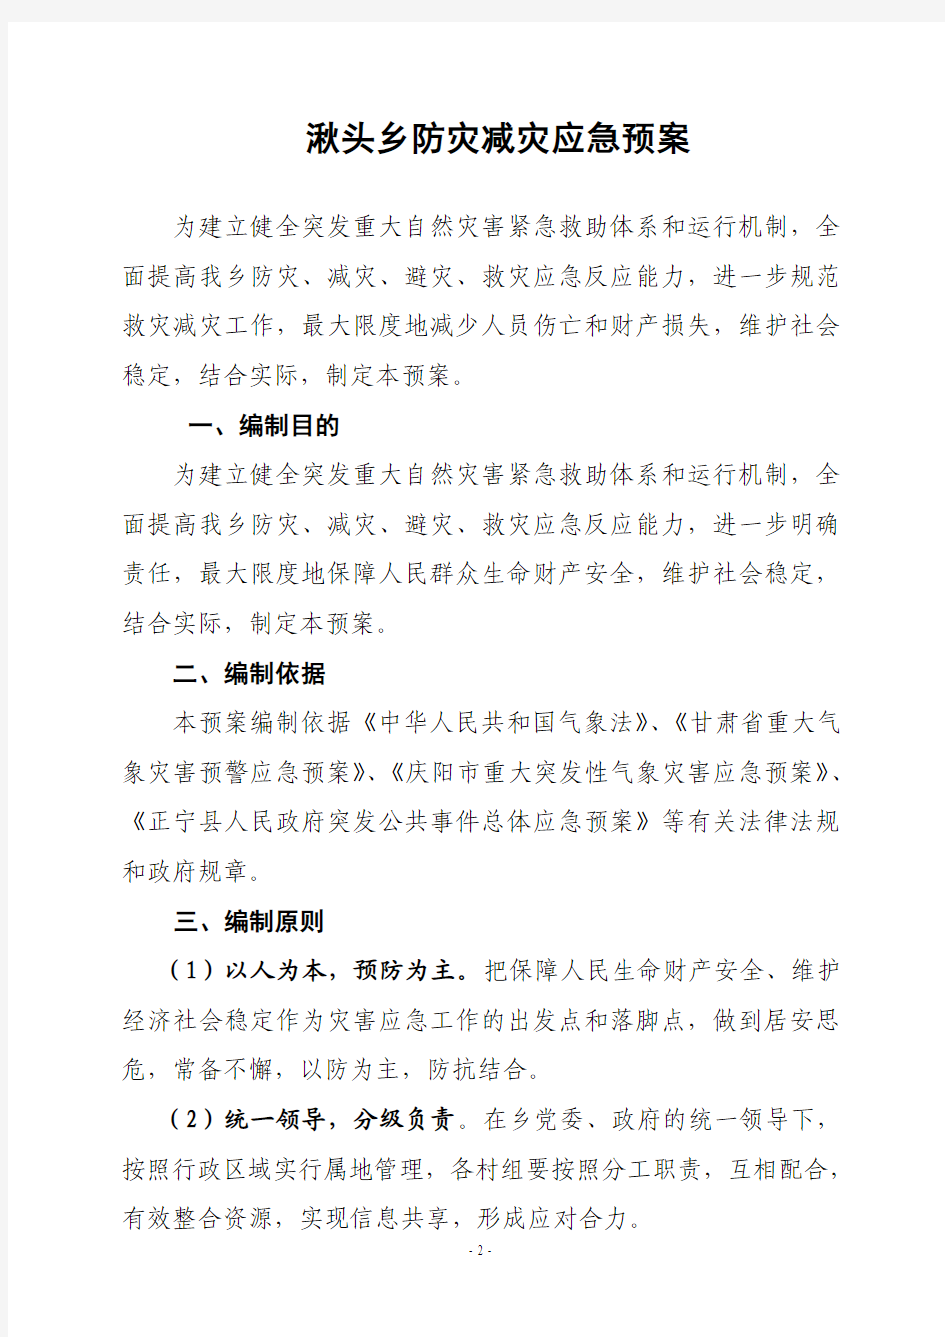 关于上报《正宁县湫头乡防灾减灾应急预案》的报告